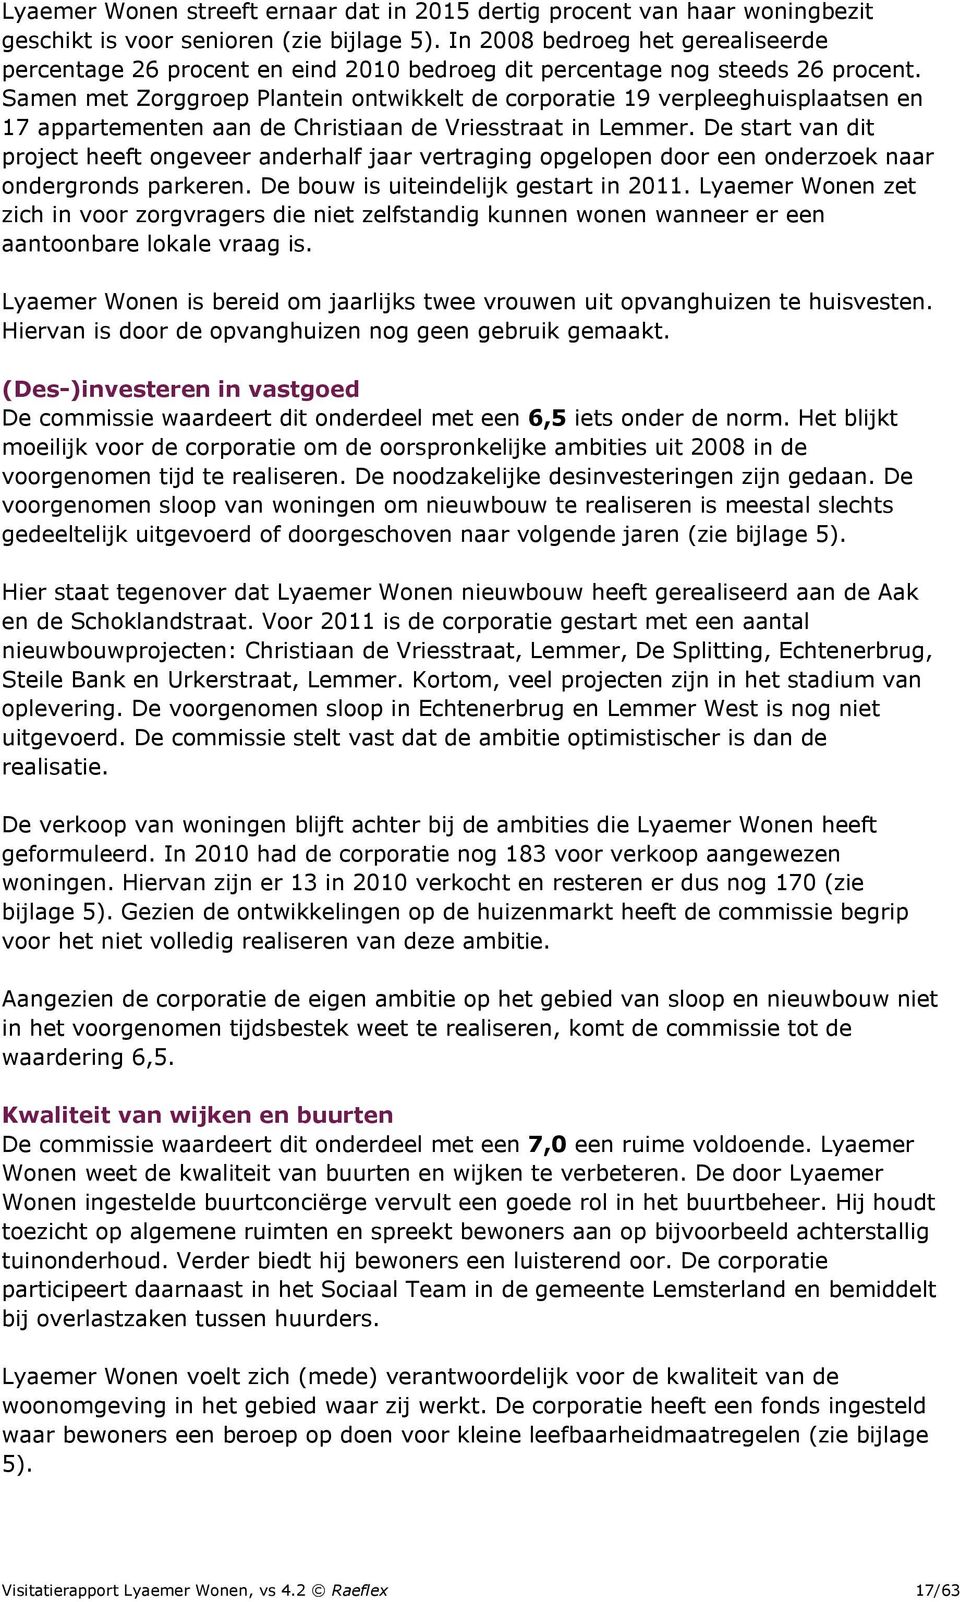 Samen met Zorggroep Plantein ontwikkelt de corporatie 19 verpleeghuisplaatsen en 17 appartementen aan de Christiaan de Vriesstraat in Lemmer.